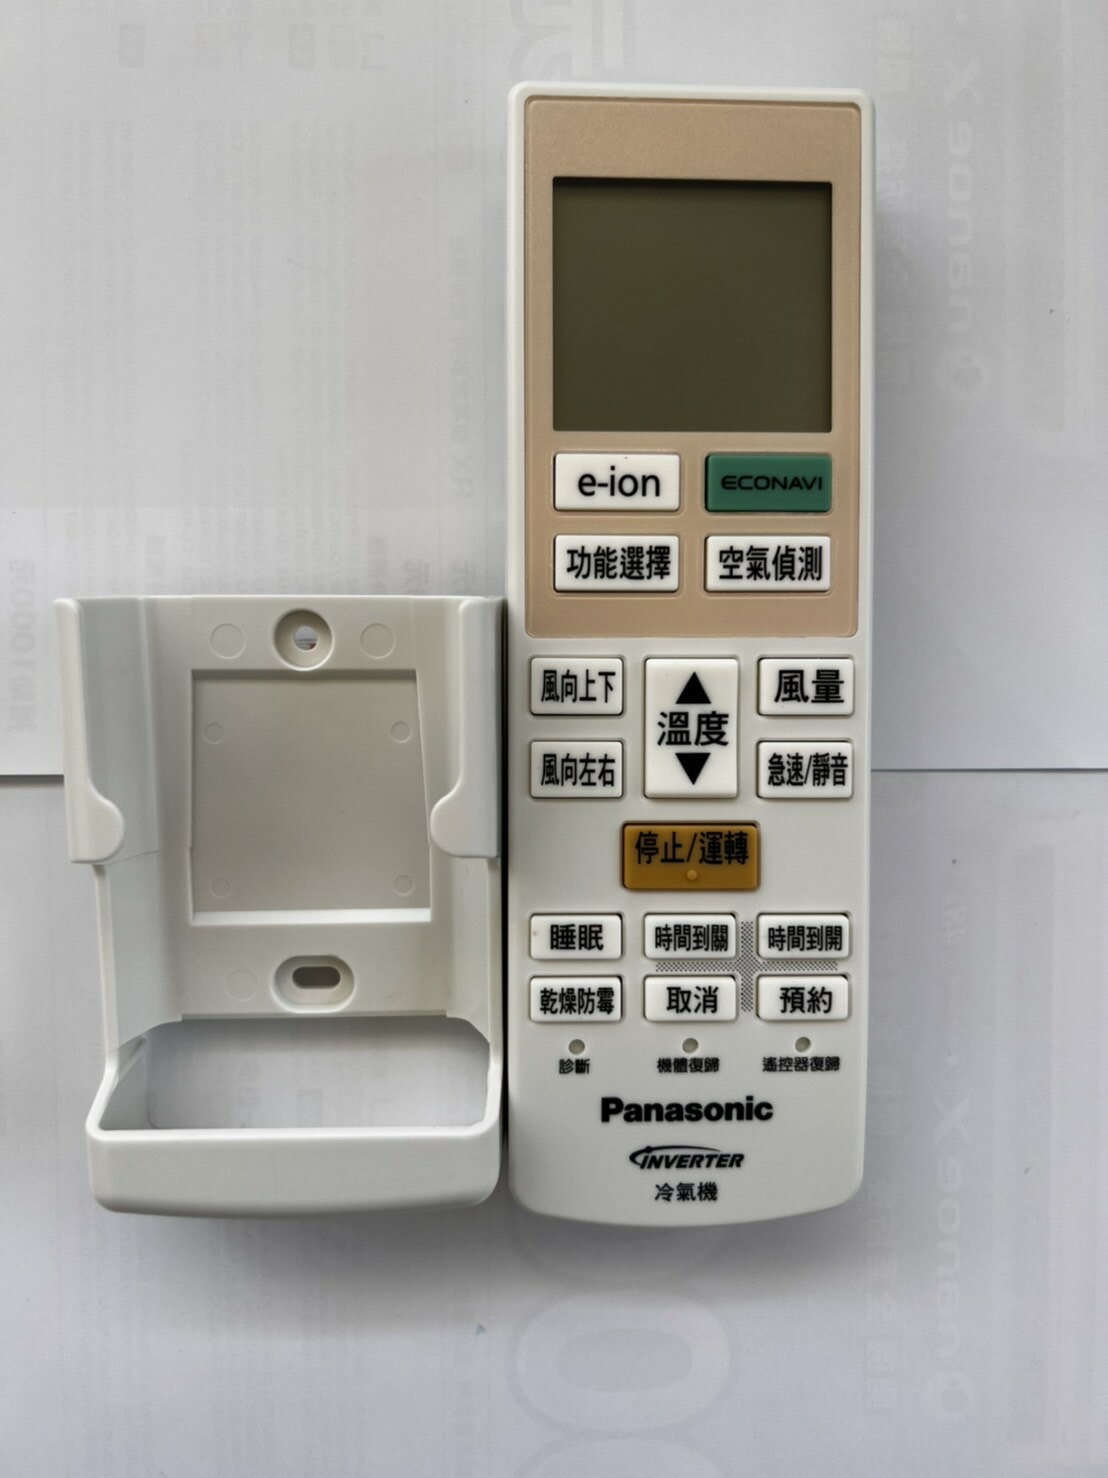 【折50】Panasonic/國際牌 LJ系列變頻冷氣遙控器(含壁掛架) C8024-9800/40429-1350